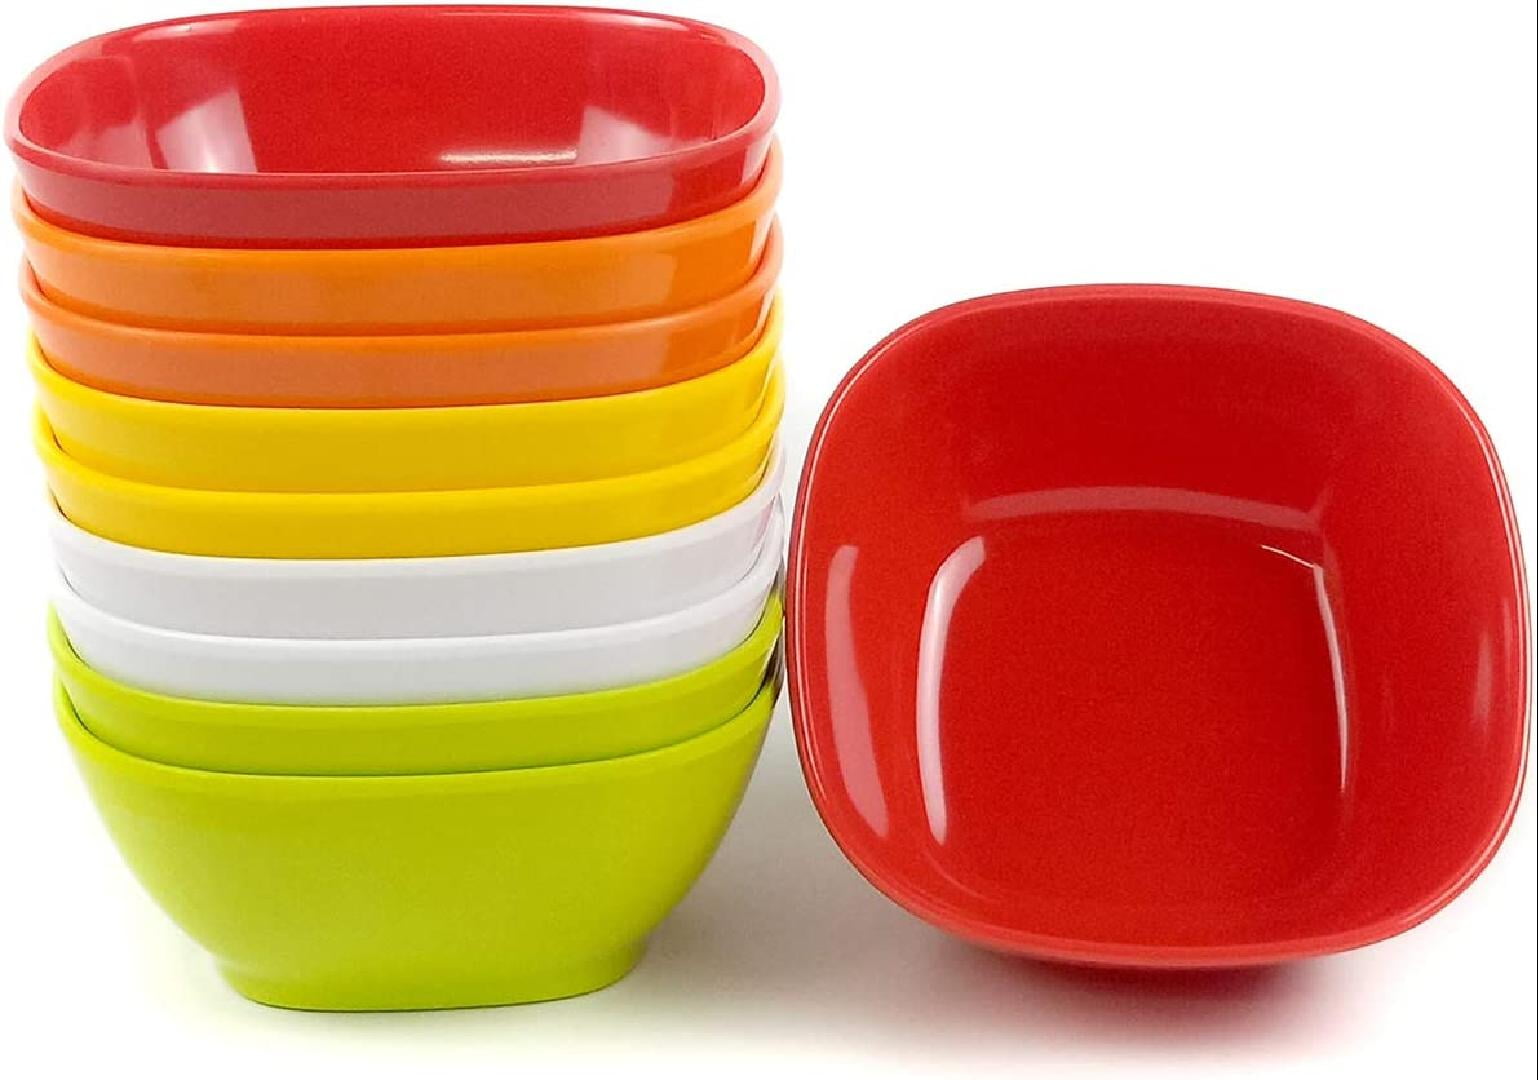 Kryllic Kids Bowls Plastic Bowls Set of 12 Plastic Cereal Bowls 10oz in 4 Colors Toddler Kid Bowl Microwave Safe Bowls Dishwasher Safe Small Bowls